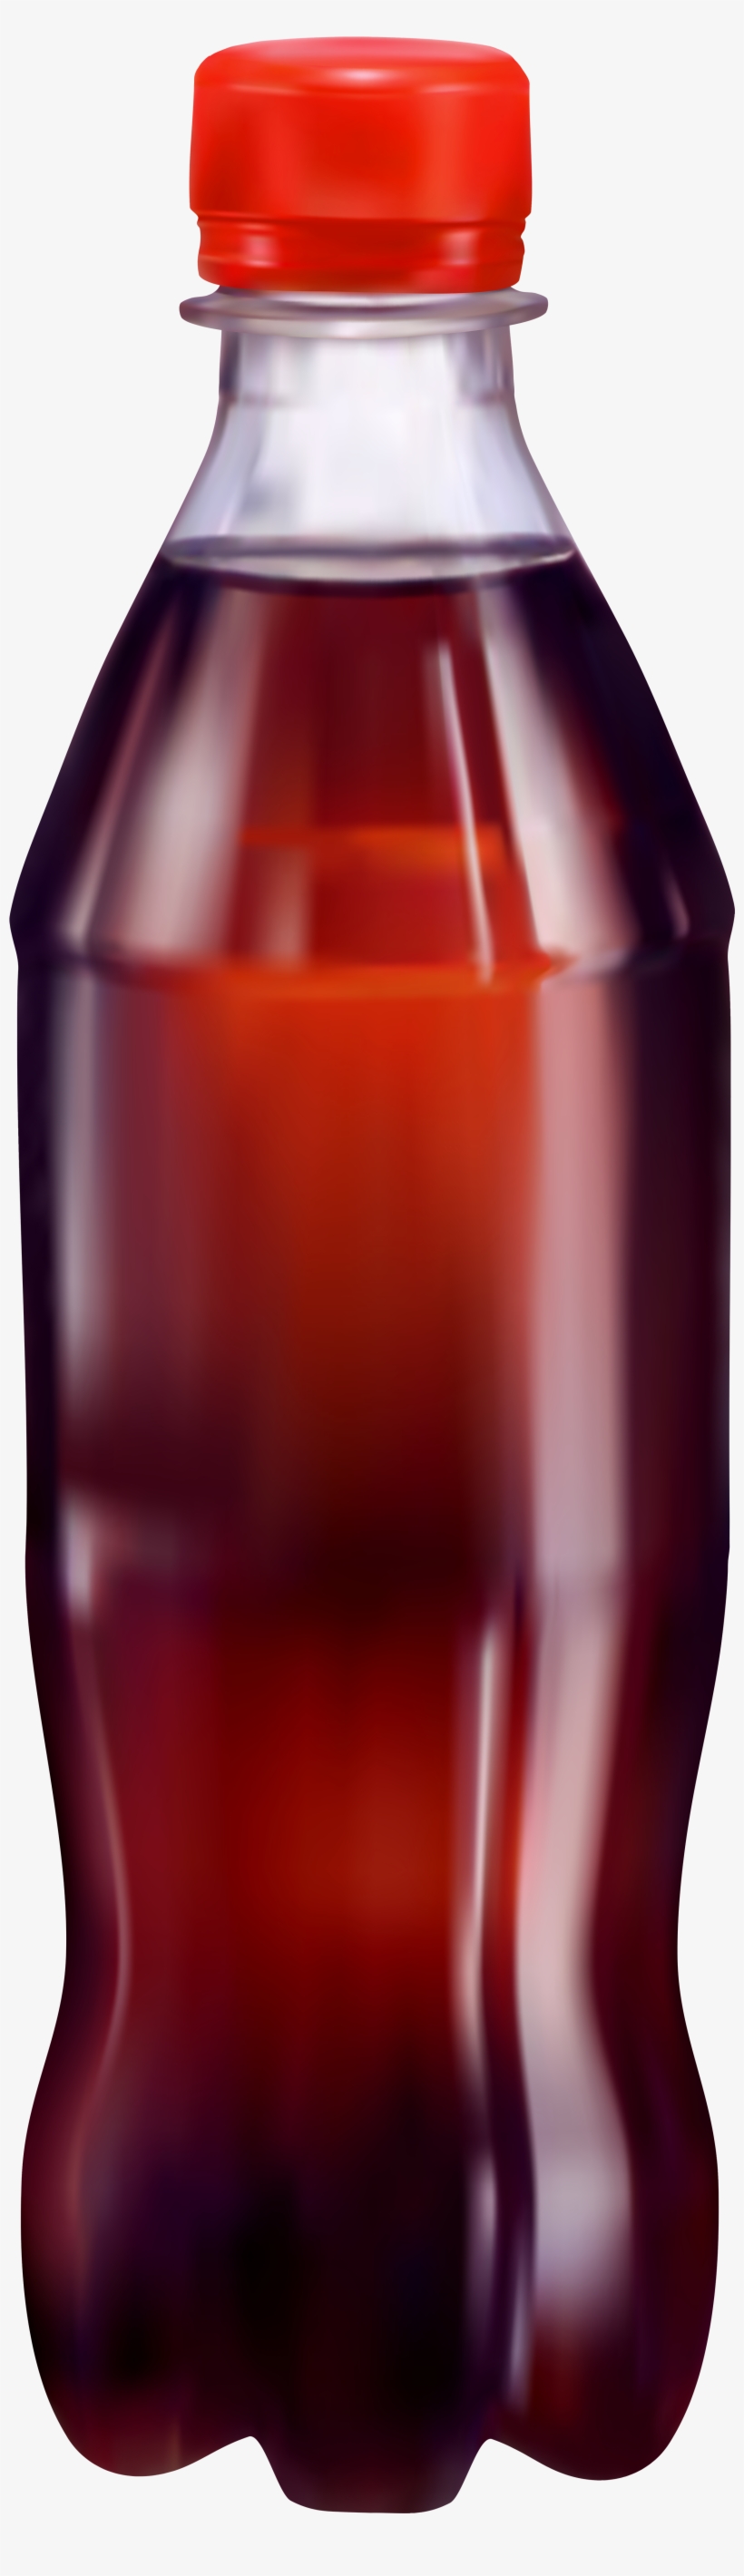 Coca Cola Bottle Png Clip Art - Glass Bottle, transparent png #350811